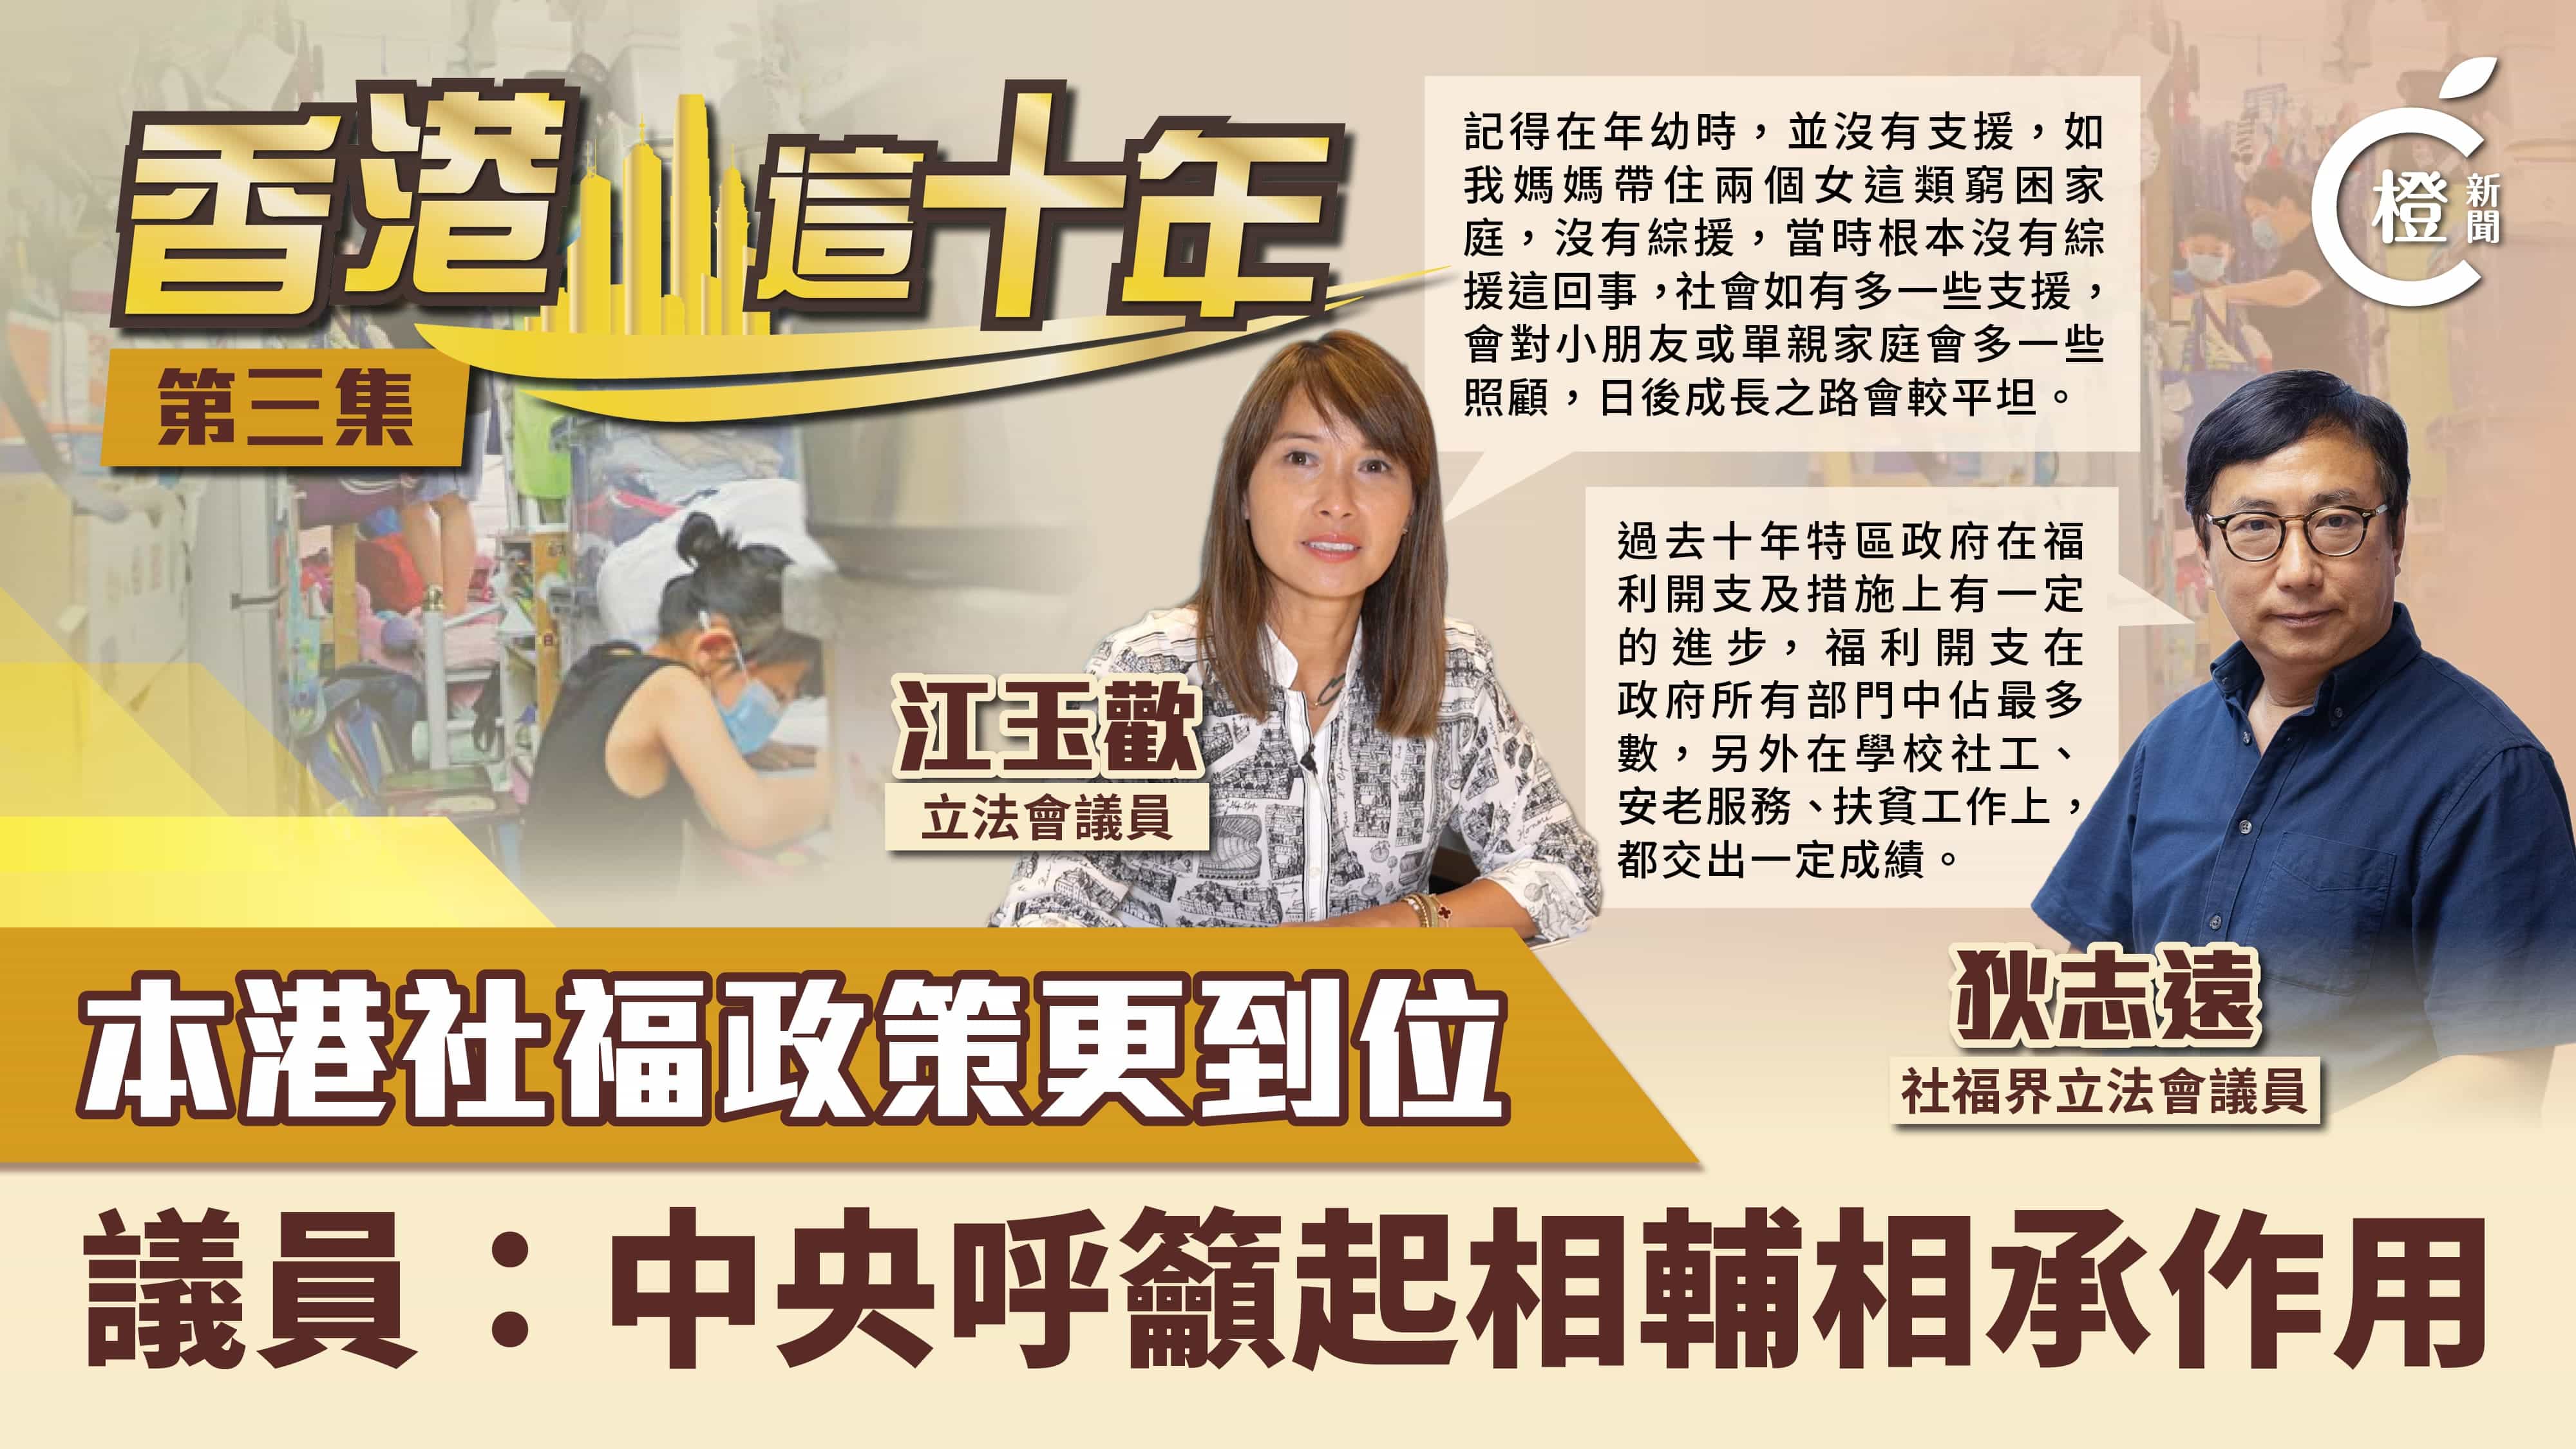 香港這十年 | 社福政策進步大　扶貧安老皆有進展　議員：中央關注起相輔相成作用